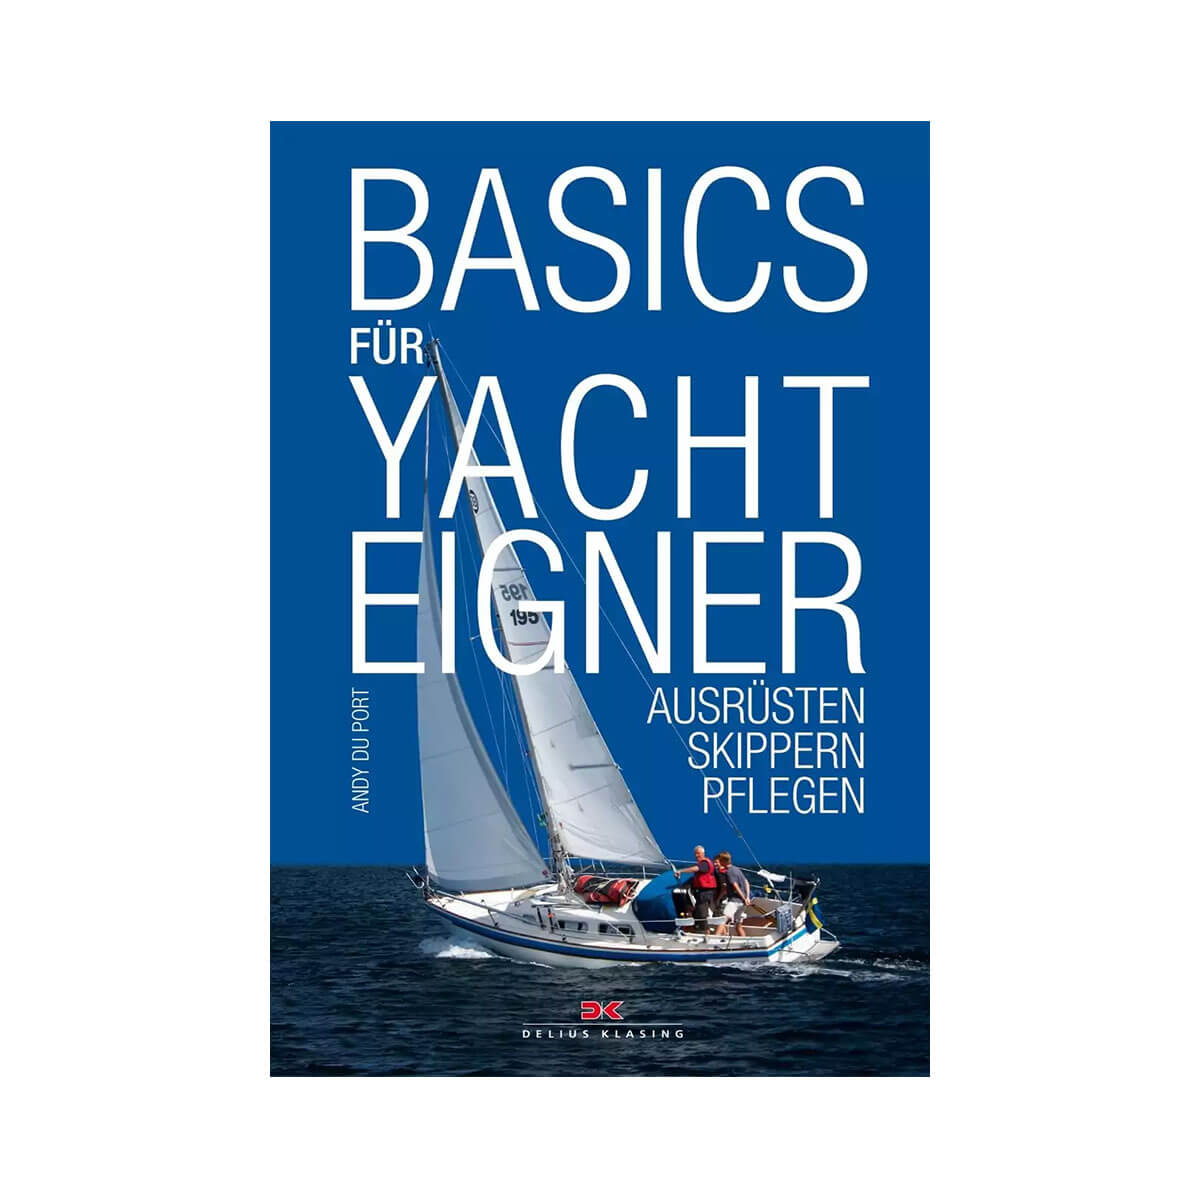 Basics für Yachteigner - Ausrüsten, Skippern, Pflegen